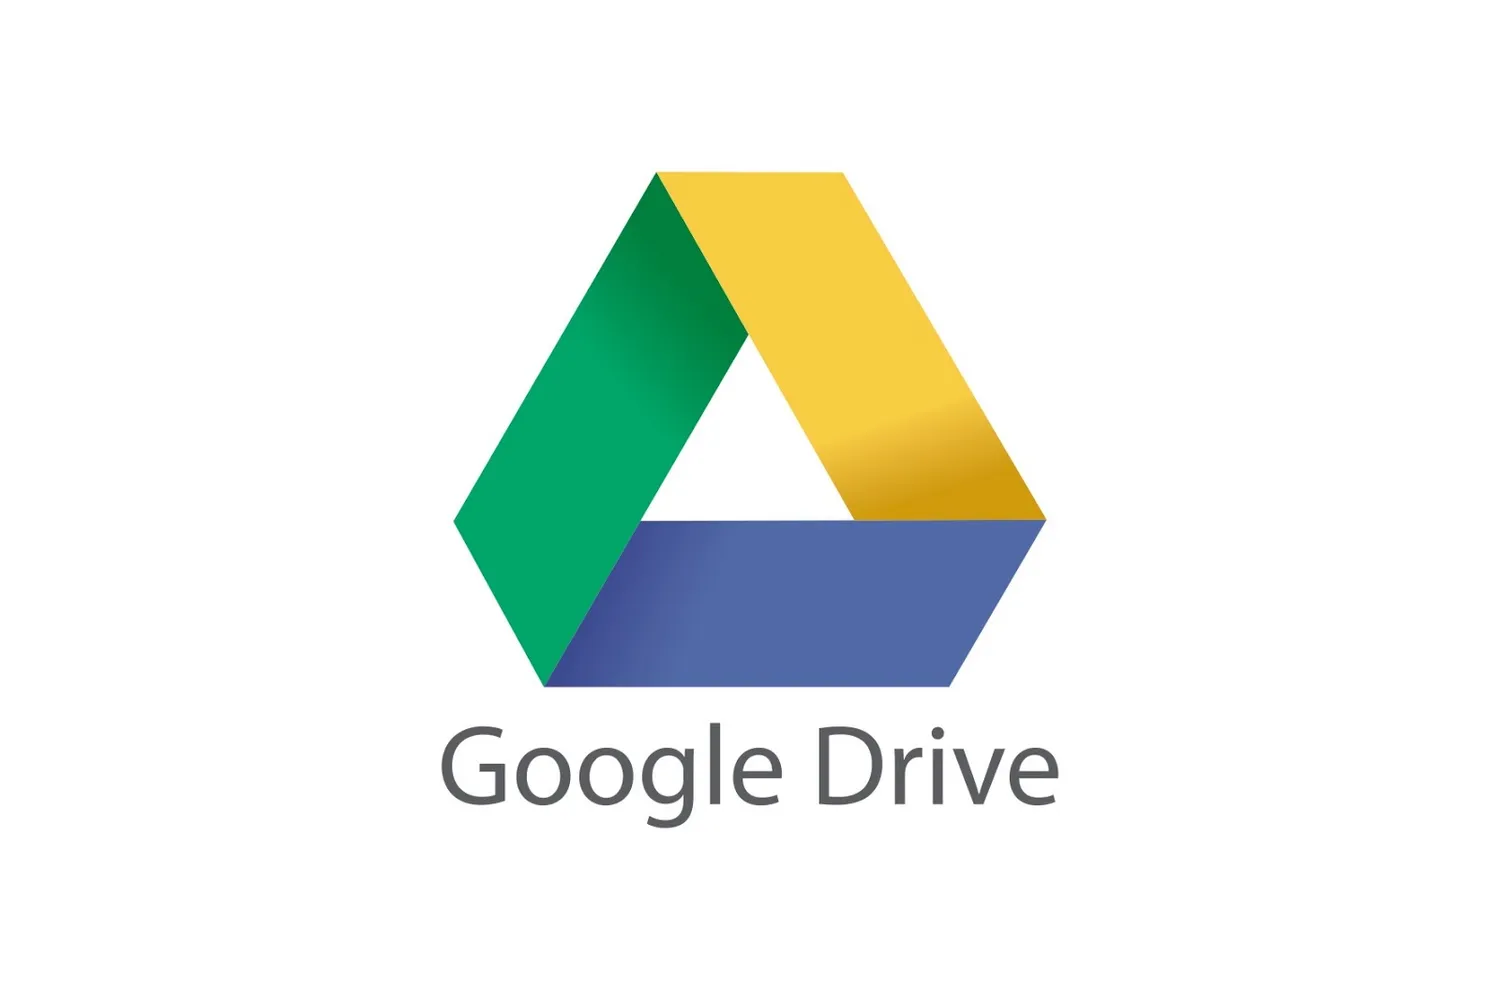 Вредоносная программа отправляет похищенные документы на Google Drive